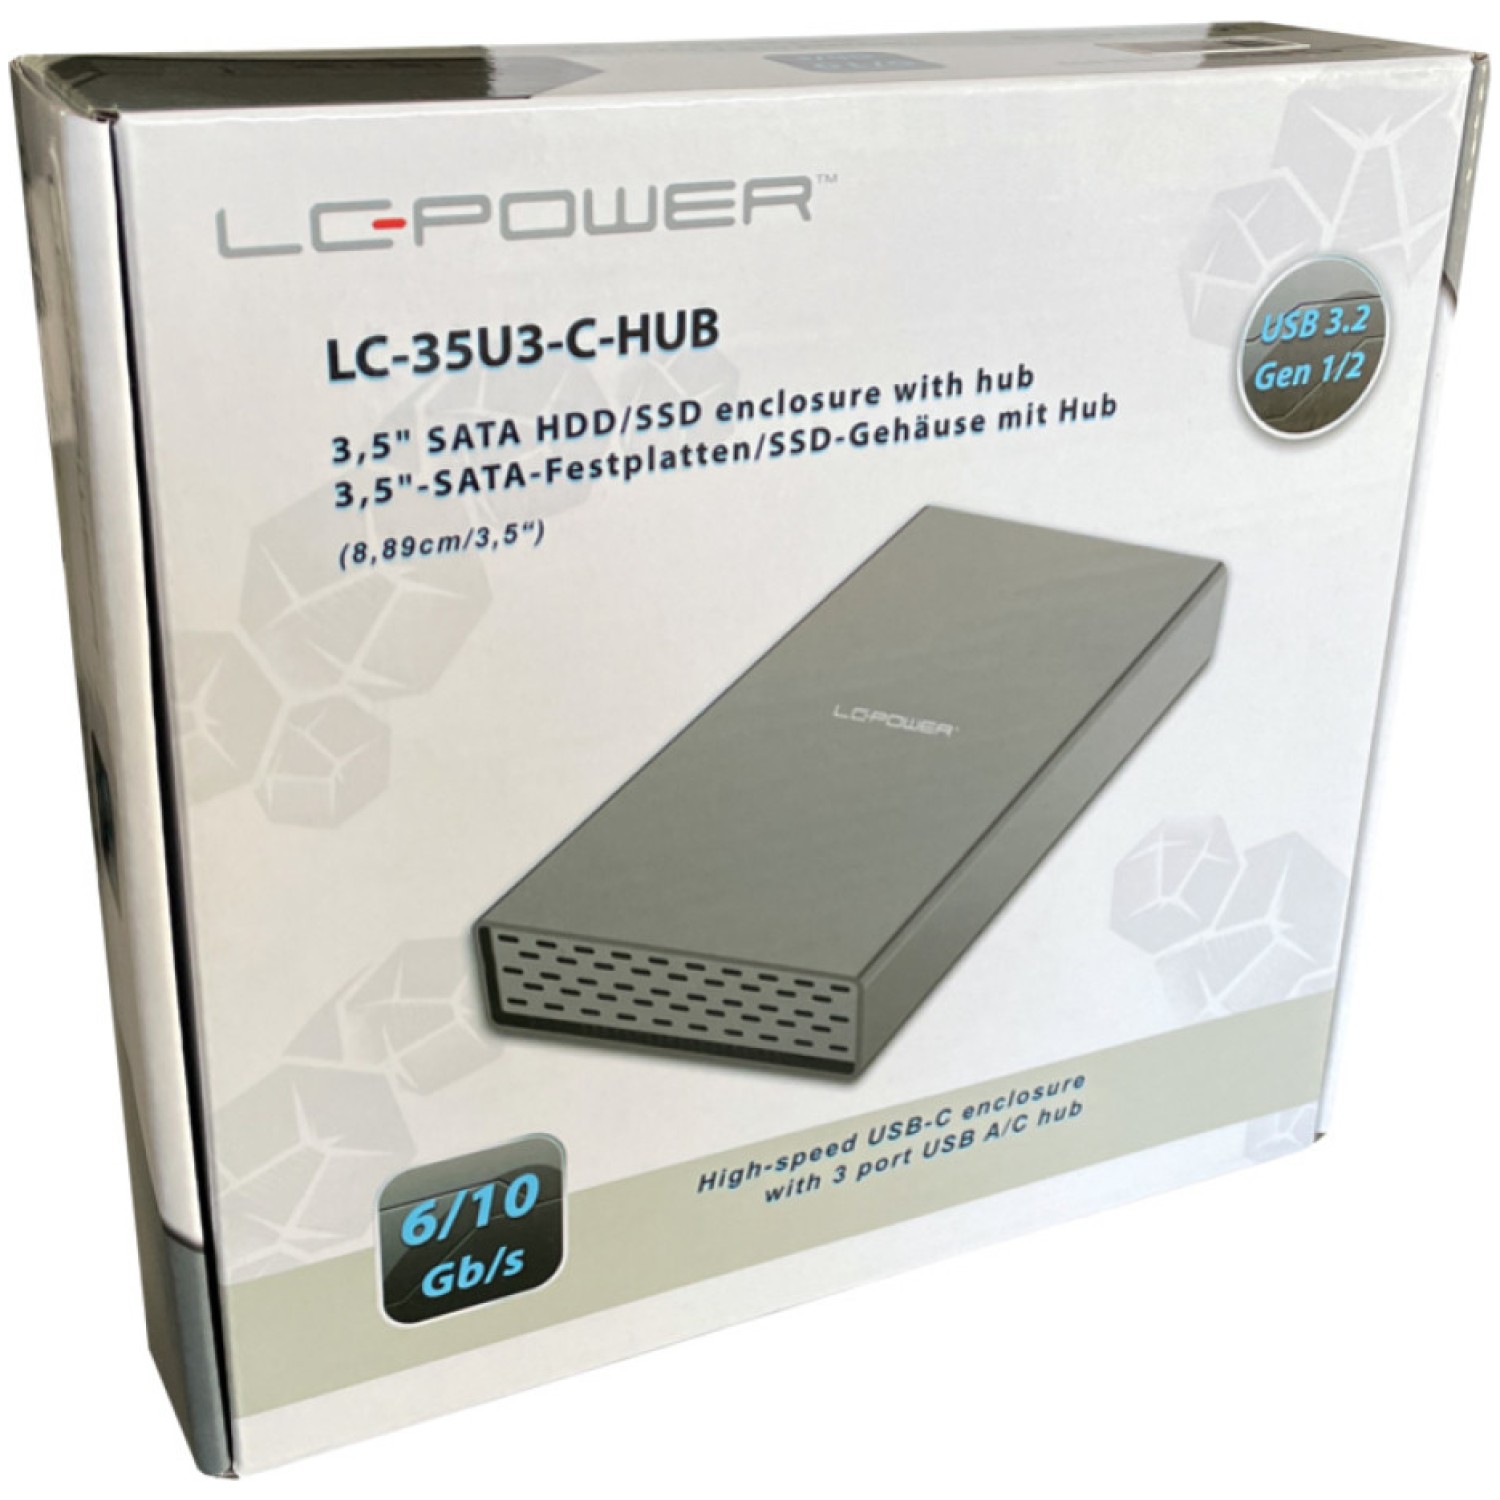 5 USB 3.2 Gen 2x1 LC Power LC-35U3-C-HUB